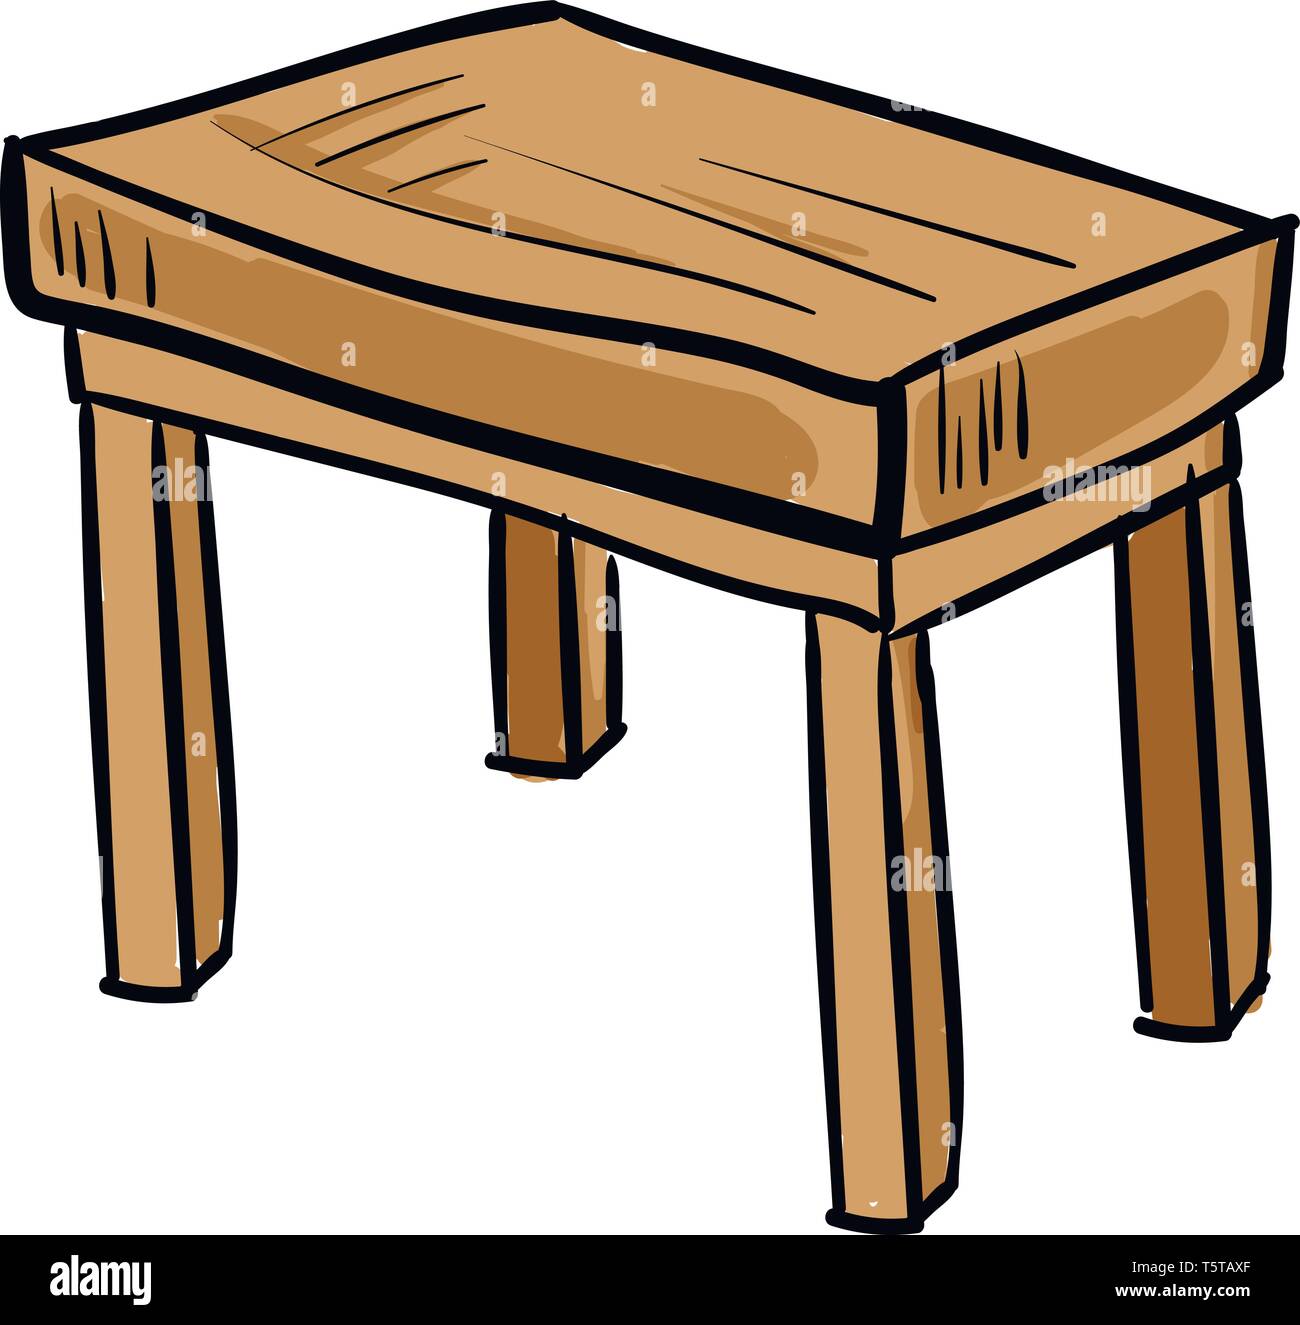 Peinture d'une vieille table en bois de couleur brune bien adapté pour effectuer les tâches de bureau et l'étude vector dessin en couleur ou de l'illustration Illustration de Vecteur